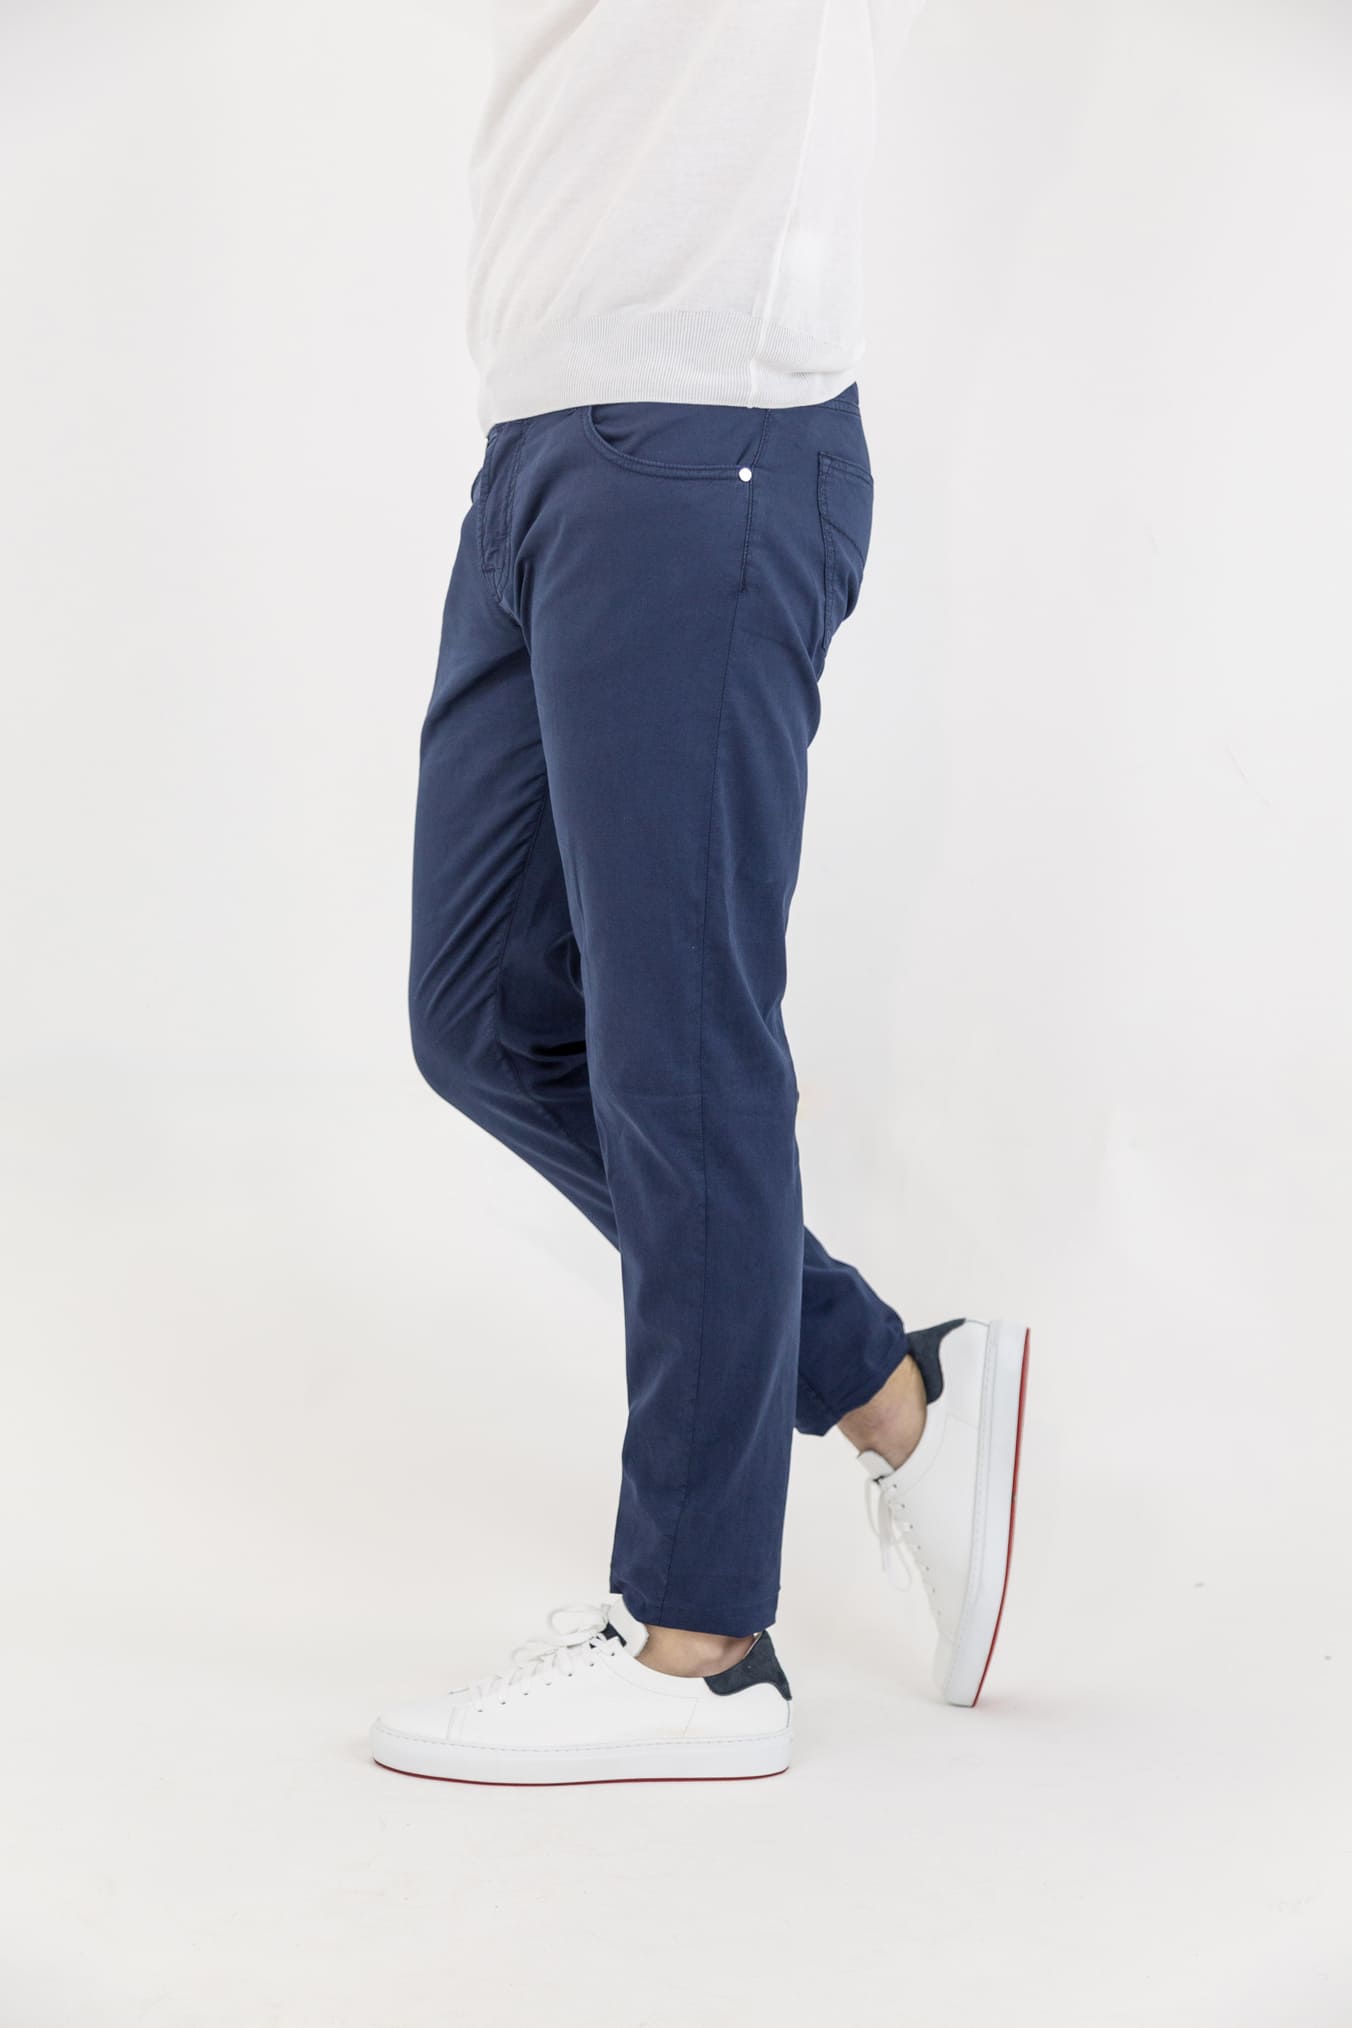 PESCAROLO 5 Pocket Trousers mod. Black Cotton Silk Navy Blue